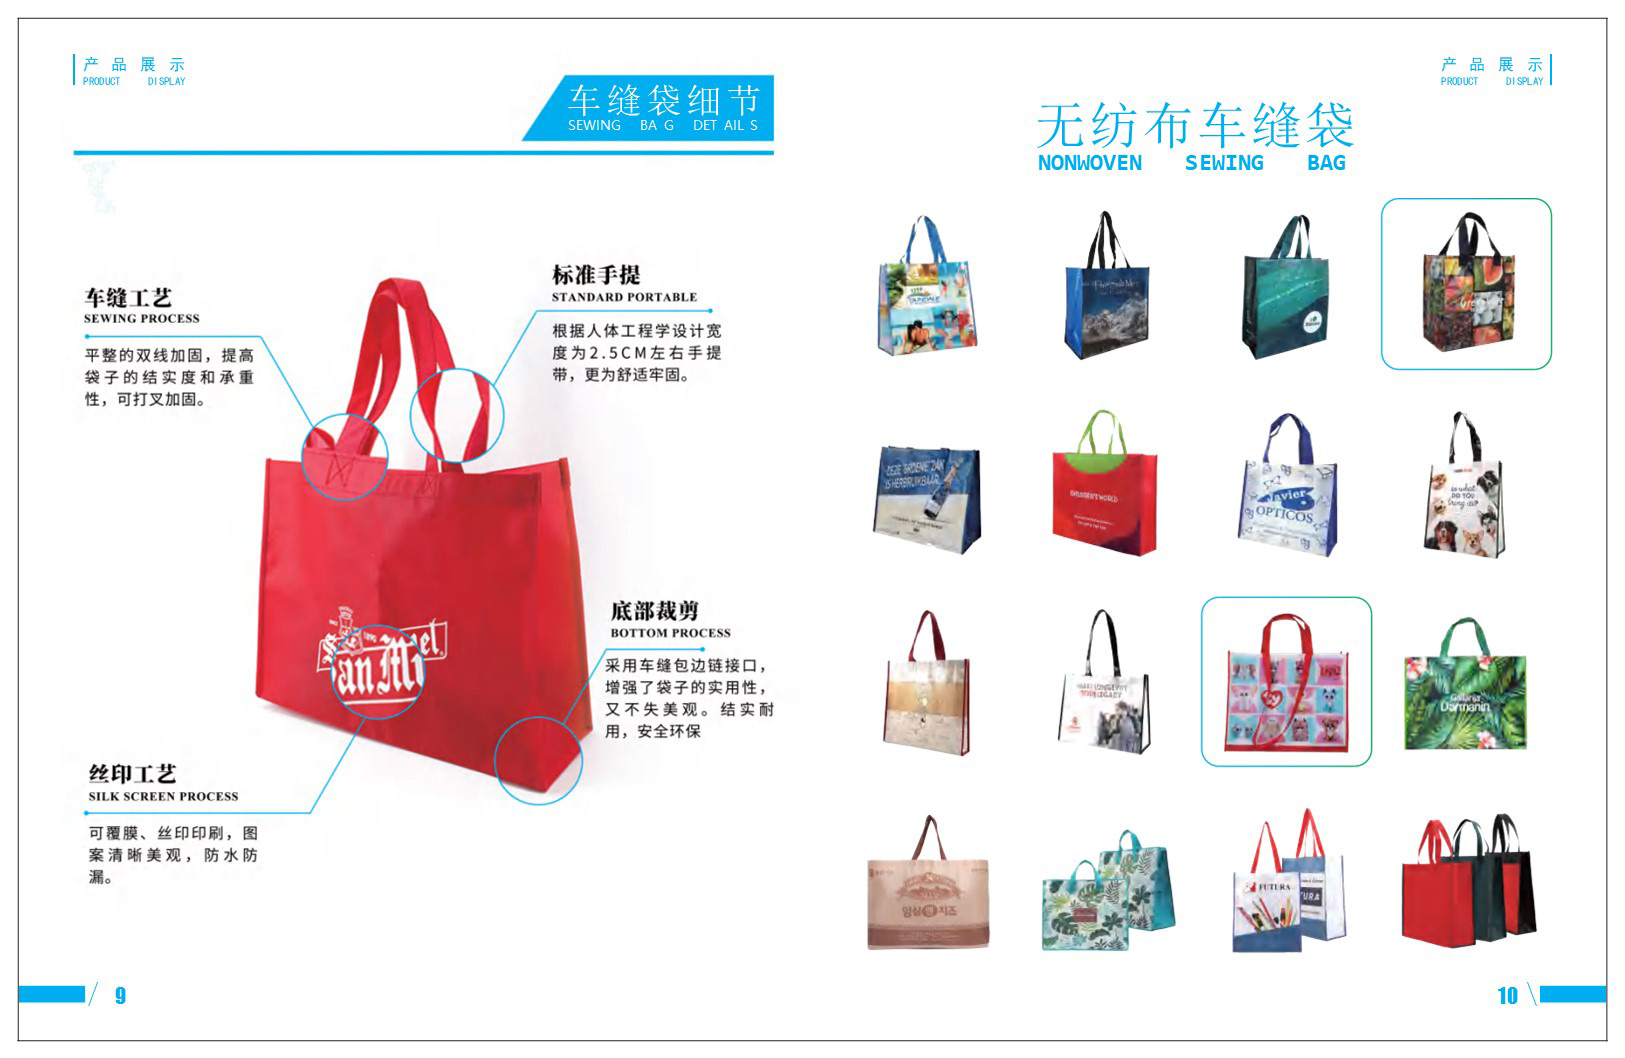 中国 ▪ 华昊无纺布有限公司将亮相CIPPME上海包装展